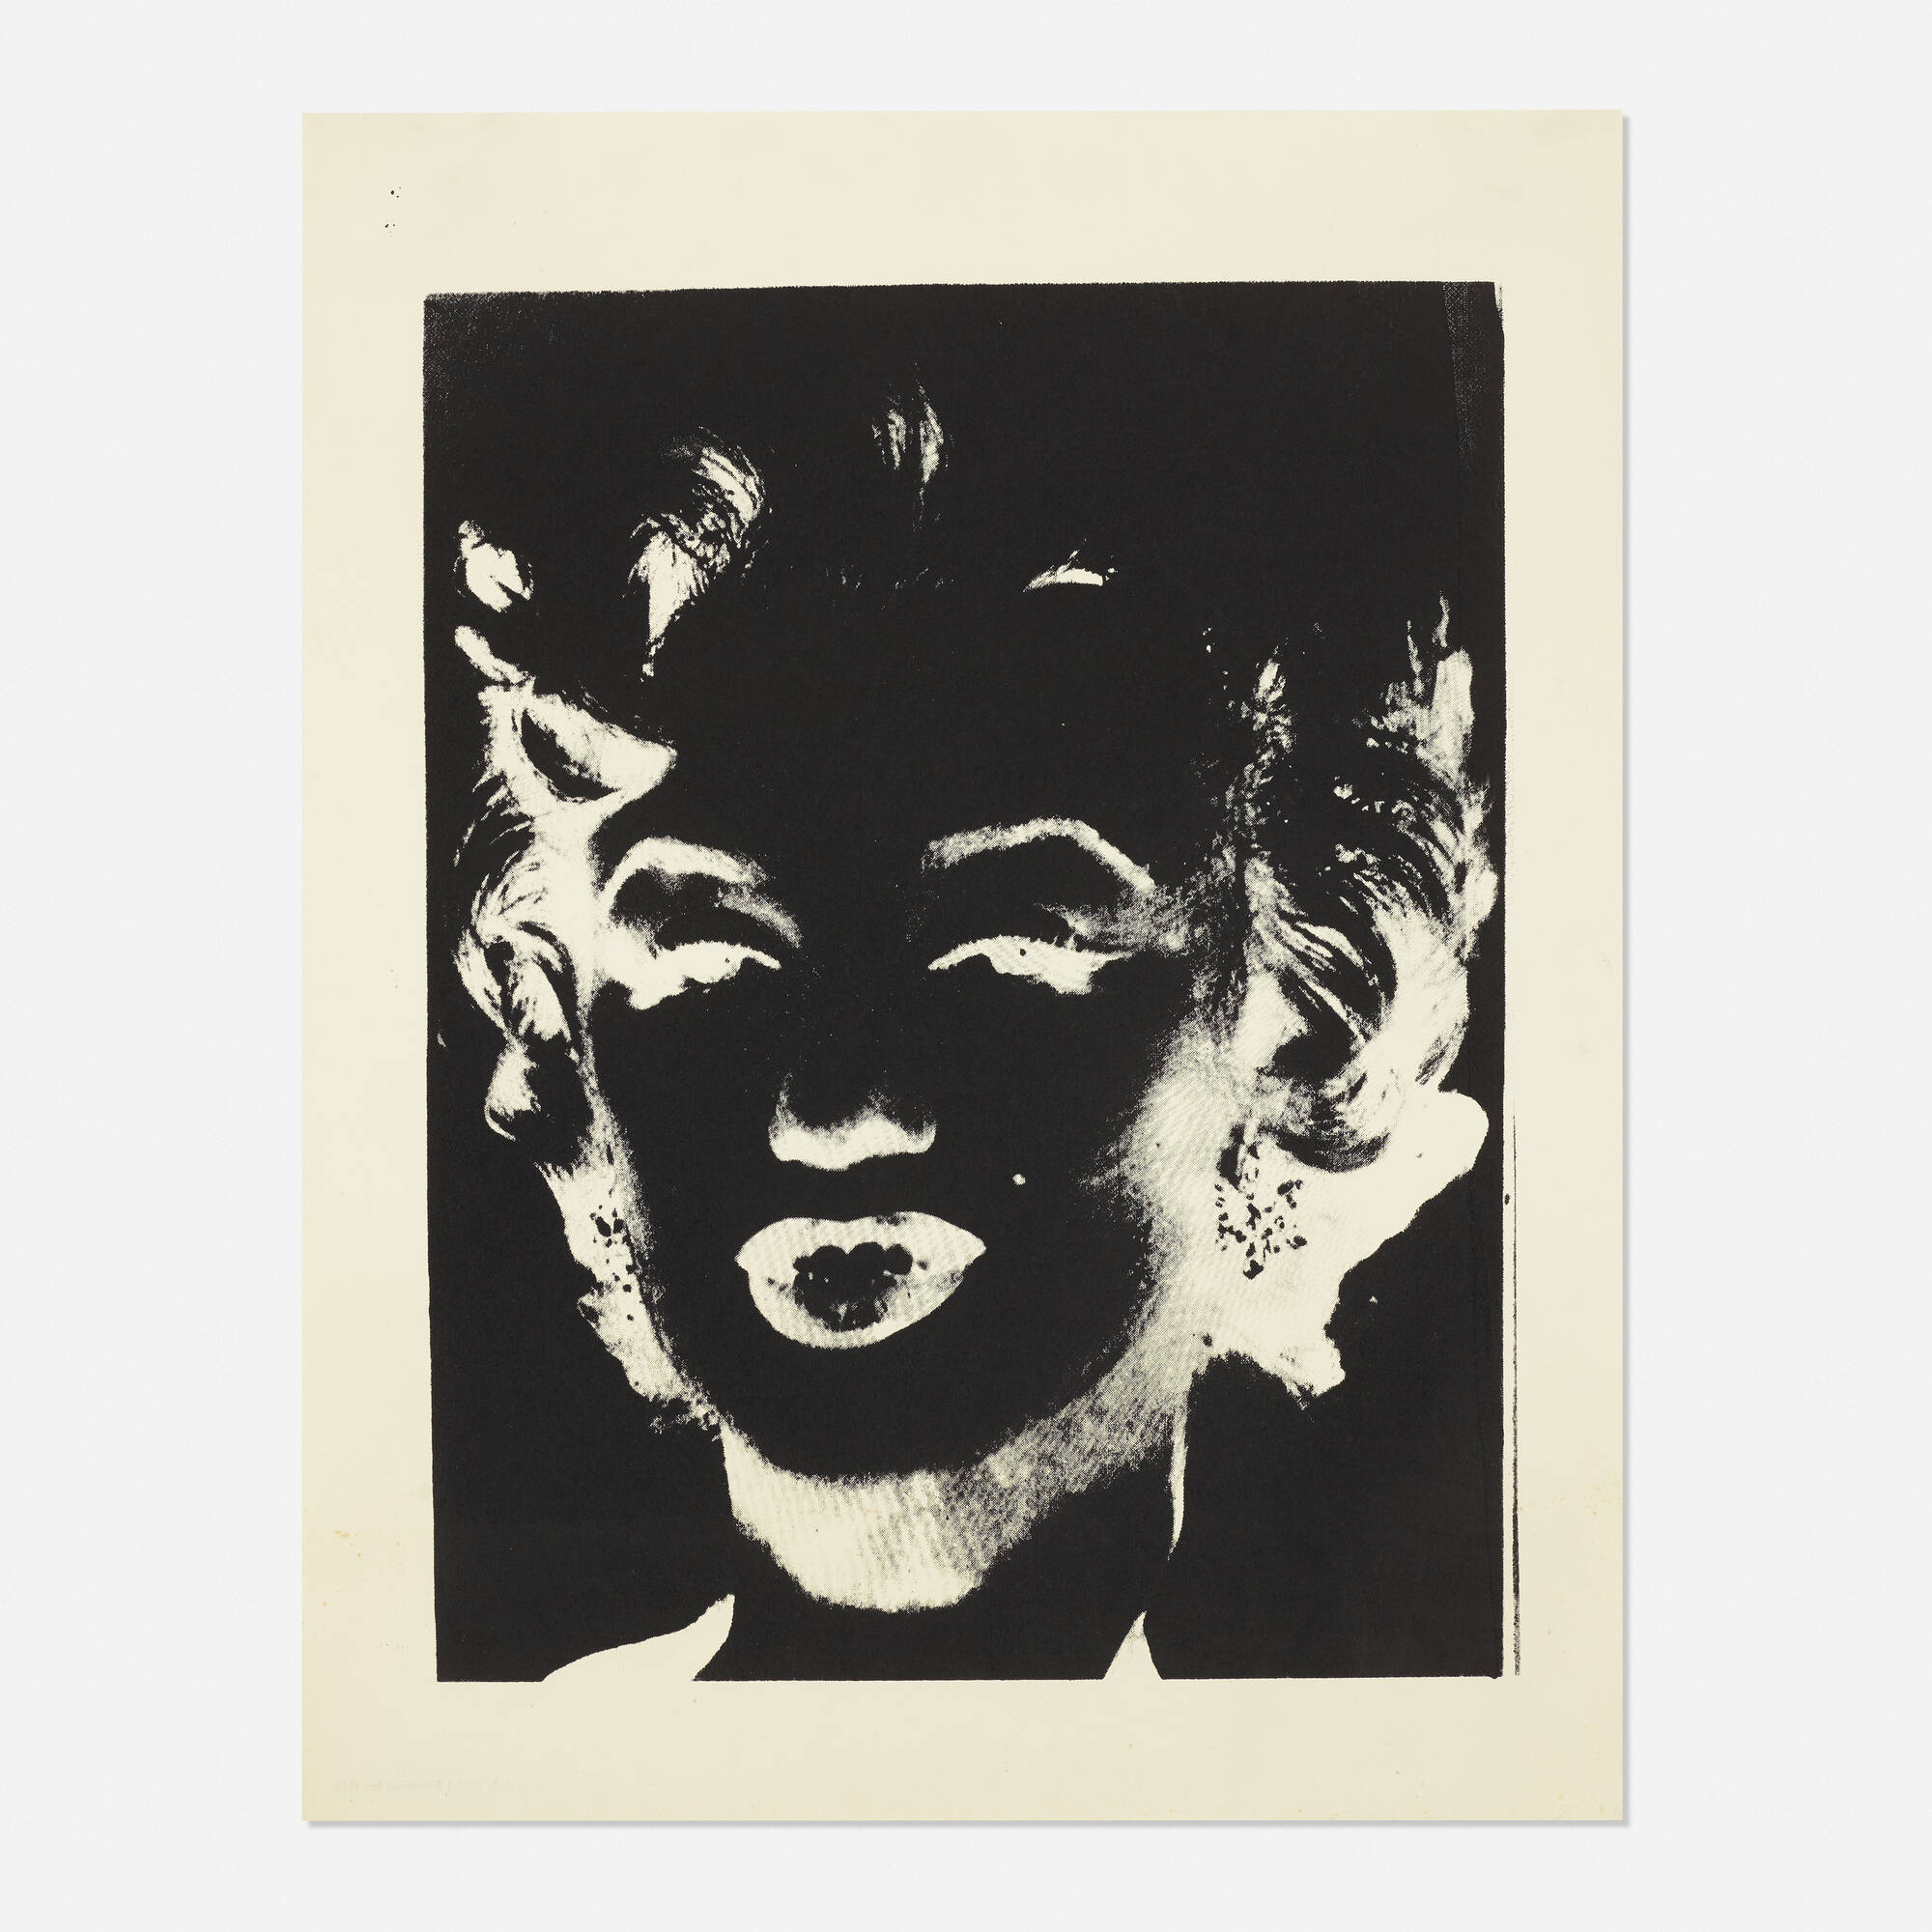 102: ANDY WARHOL, Marilyn Monroe (Marilyn) < 20th Century Art, 10